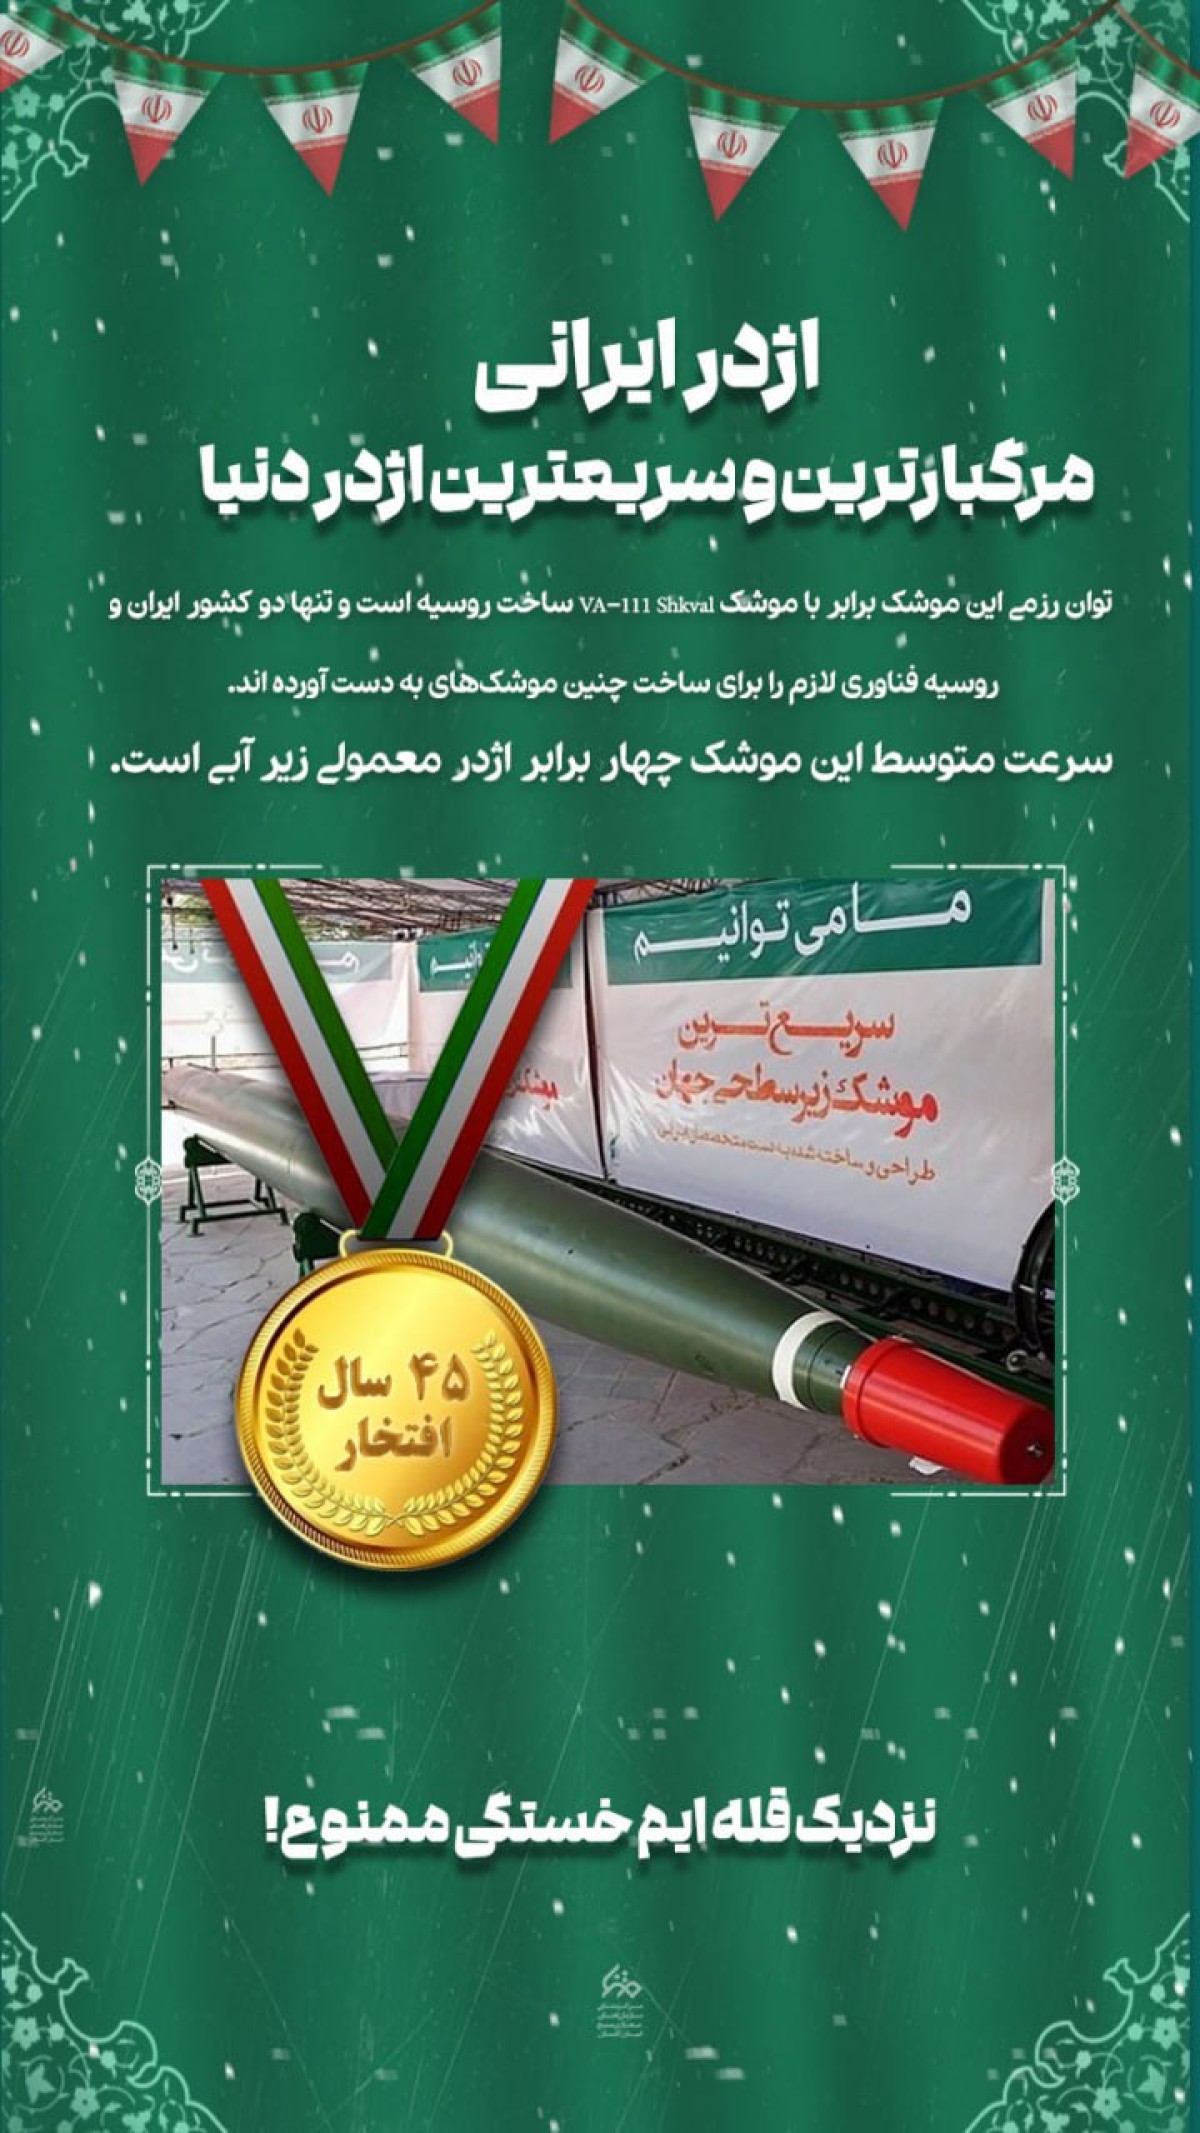 پوستر : اژدر ایرانی مرگبارترین و سریعترین اژدر دنیا